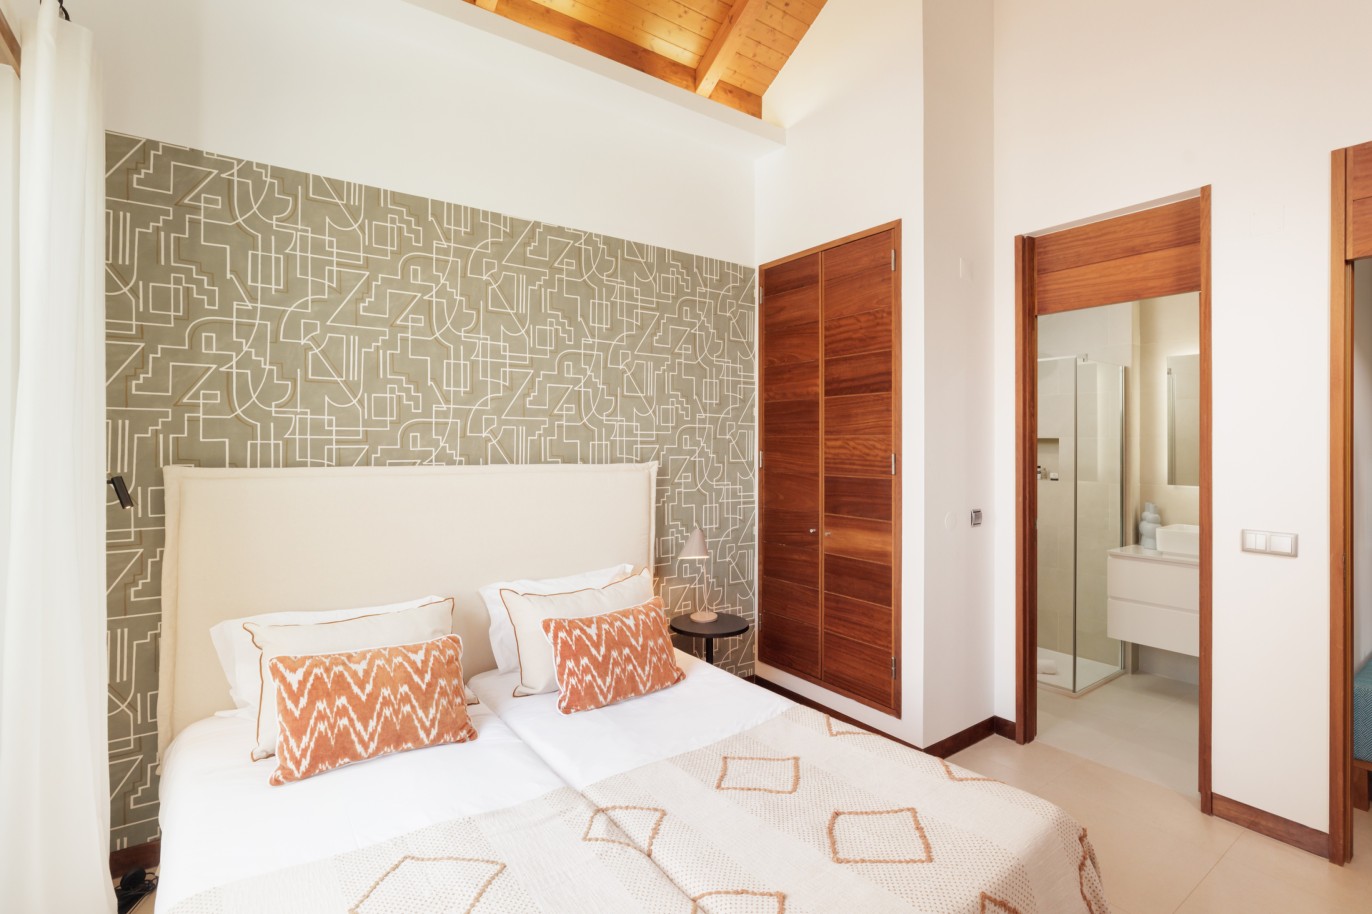 2+1 bedroom villa with pool, for sale in Vale do Lobo, Algarve_232750